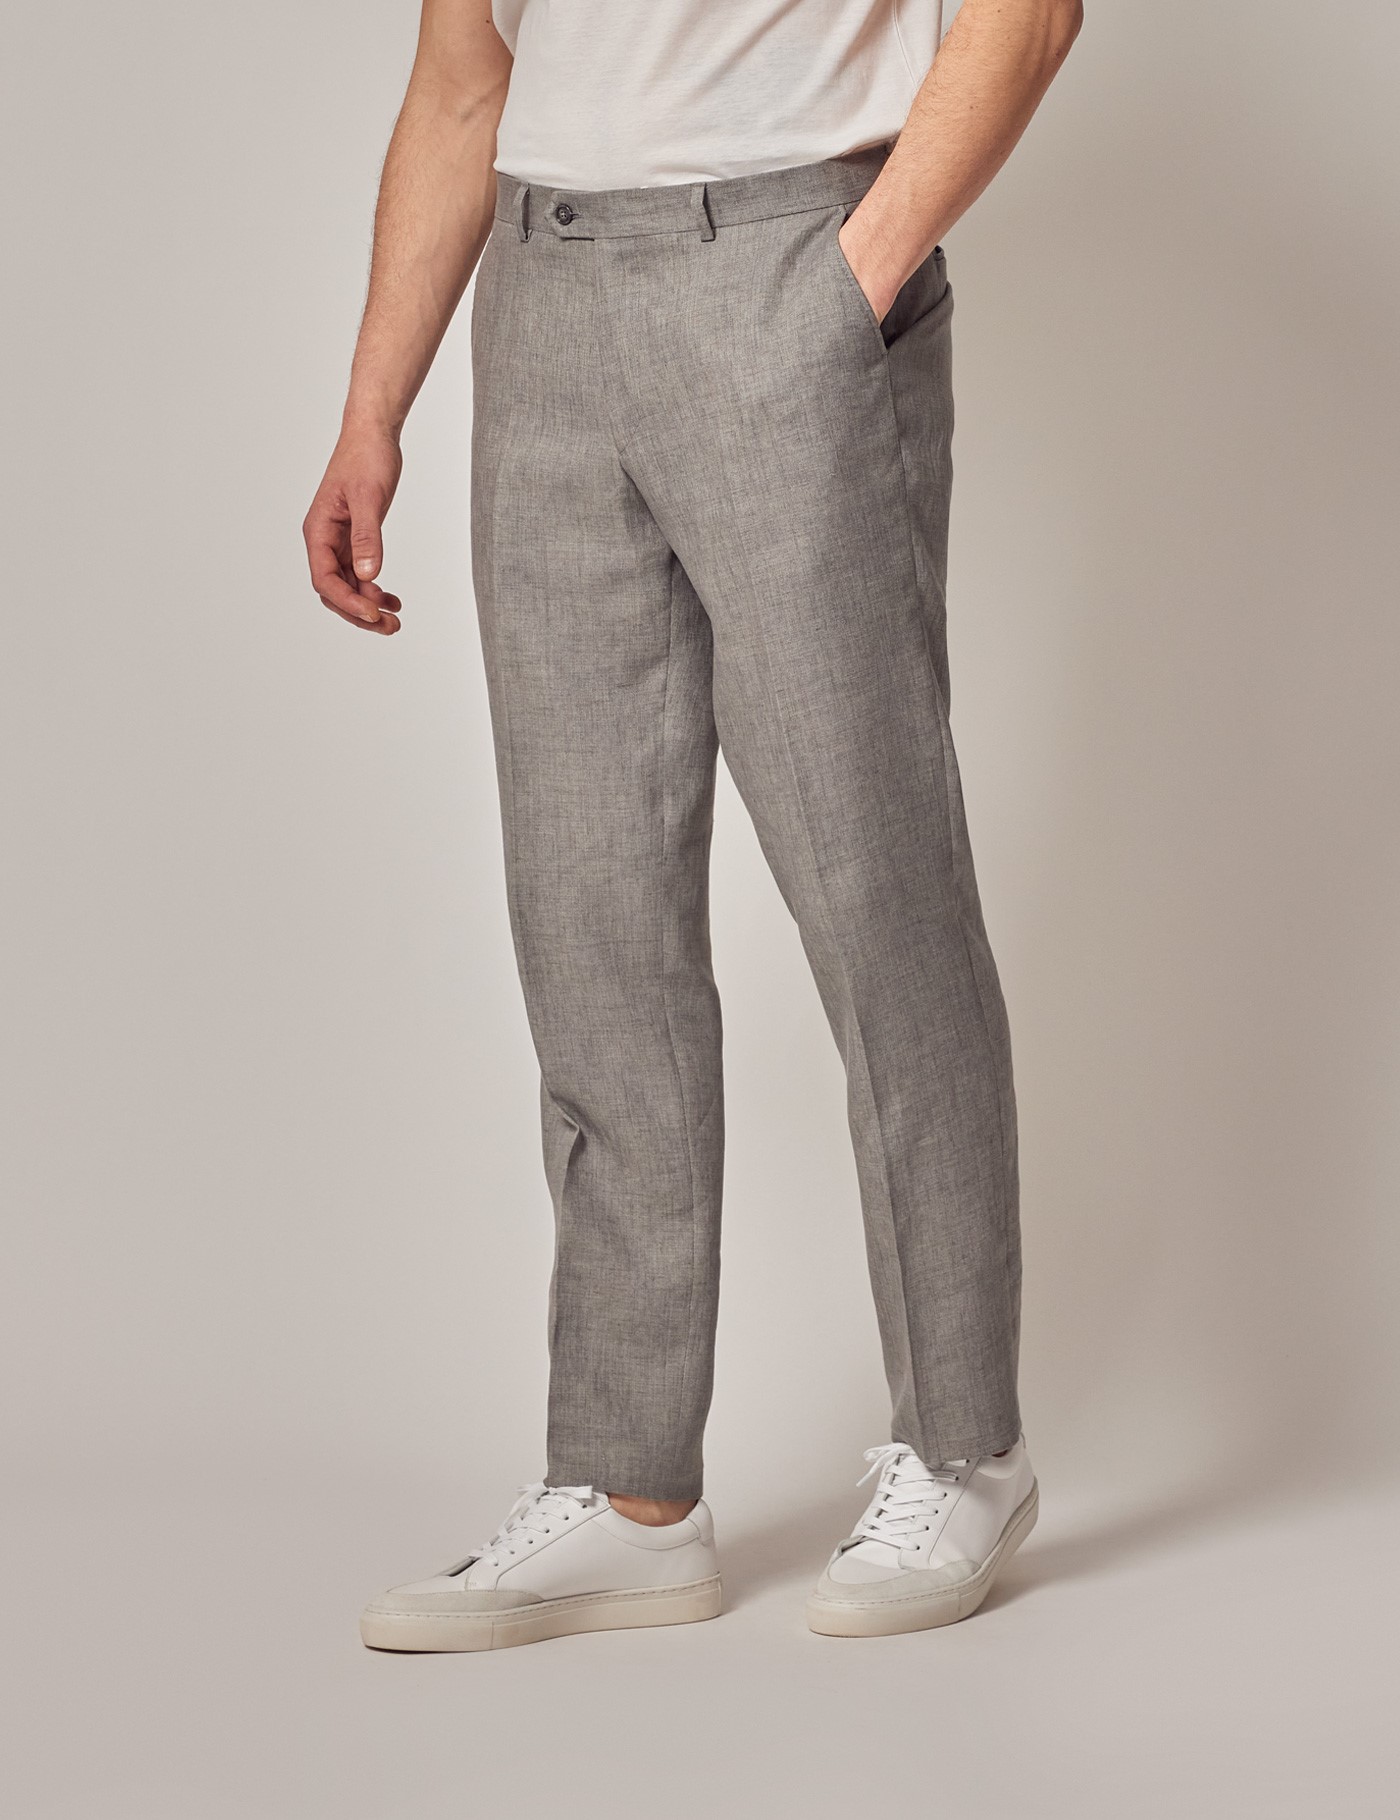 Buy celio Light Grey Mid Rise Linen Trousers for Men Online  Tata CLiQ